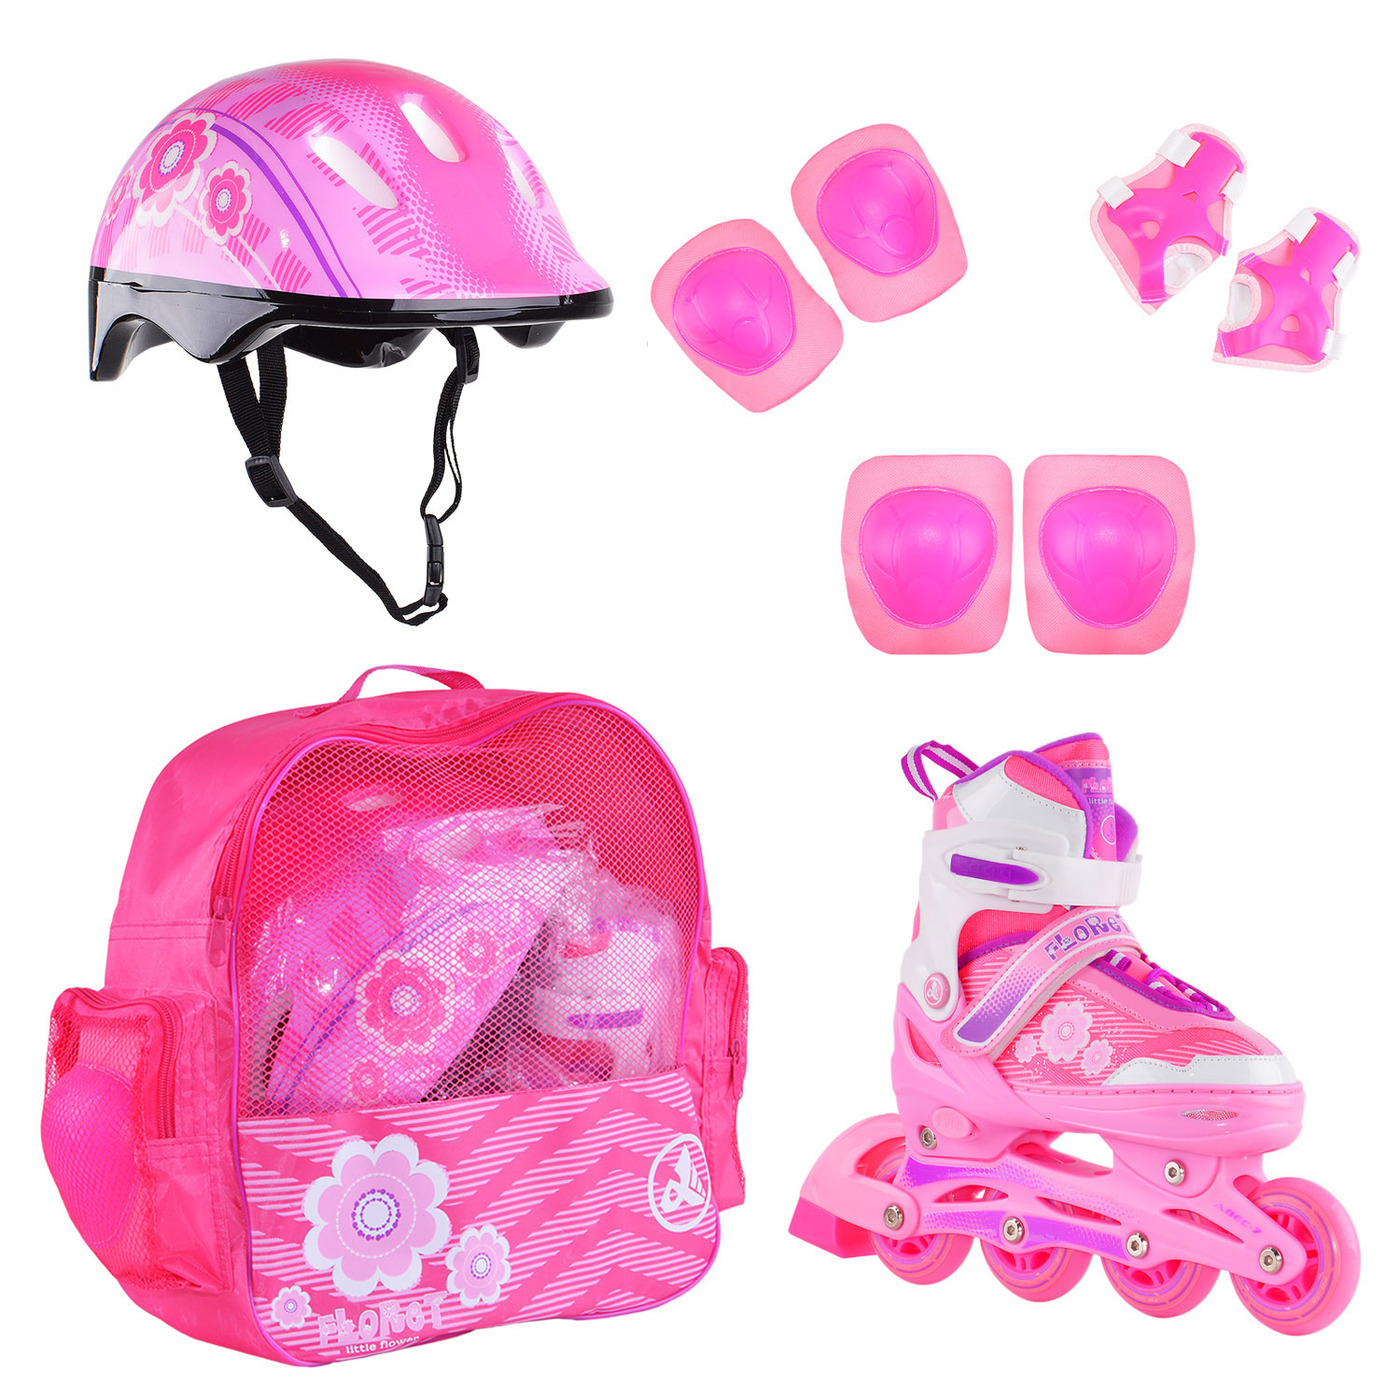 фото Раздвижные роликовые коньки alpha caprice floret wh/pink/viol шлем, защита, сумка m:35-38